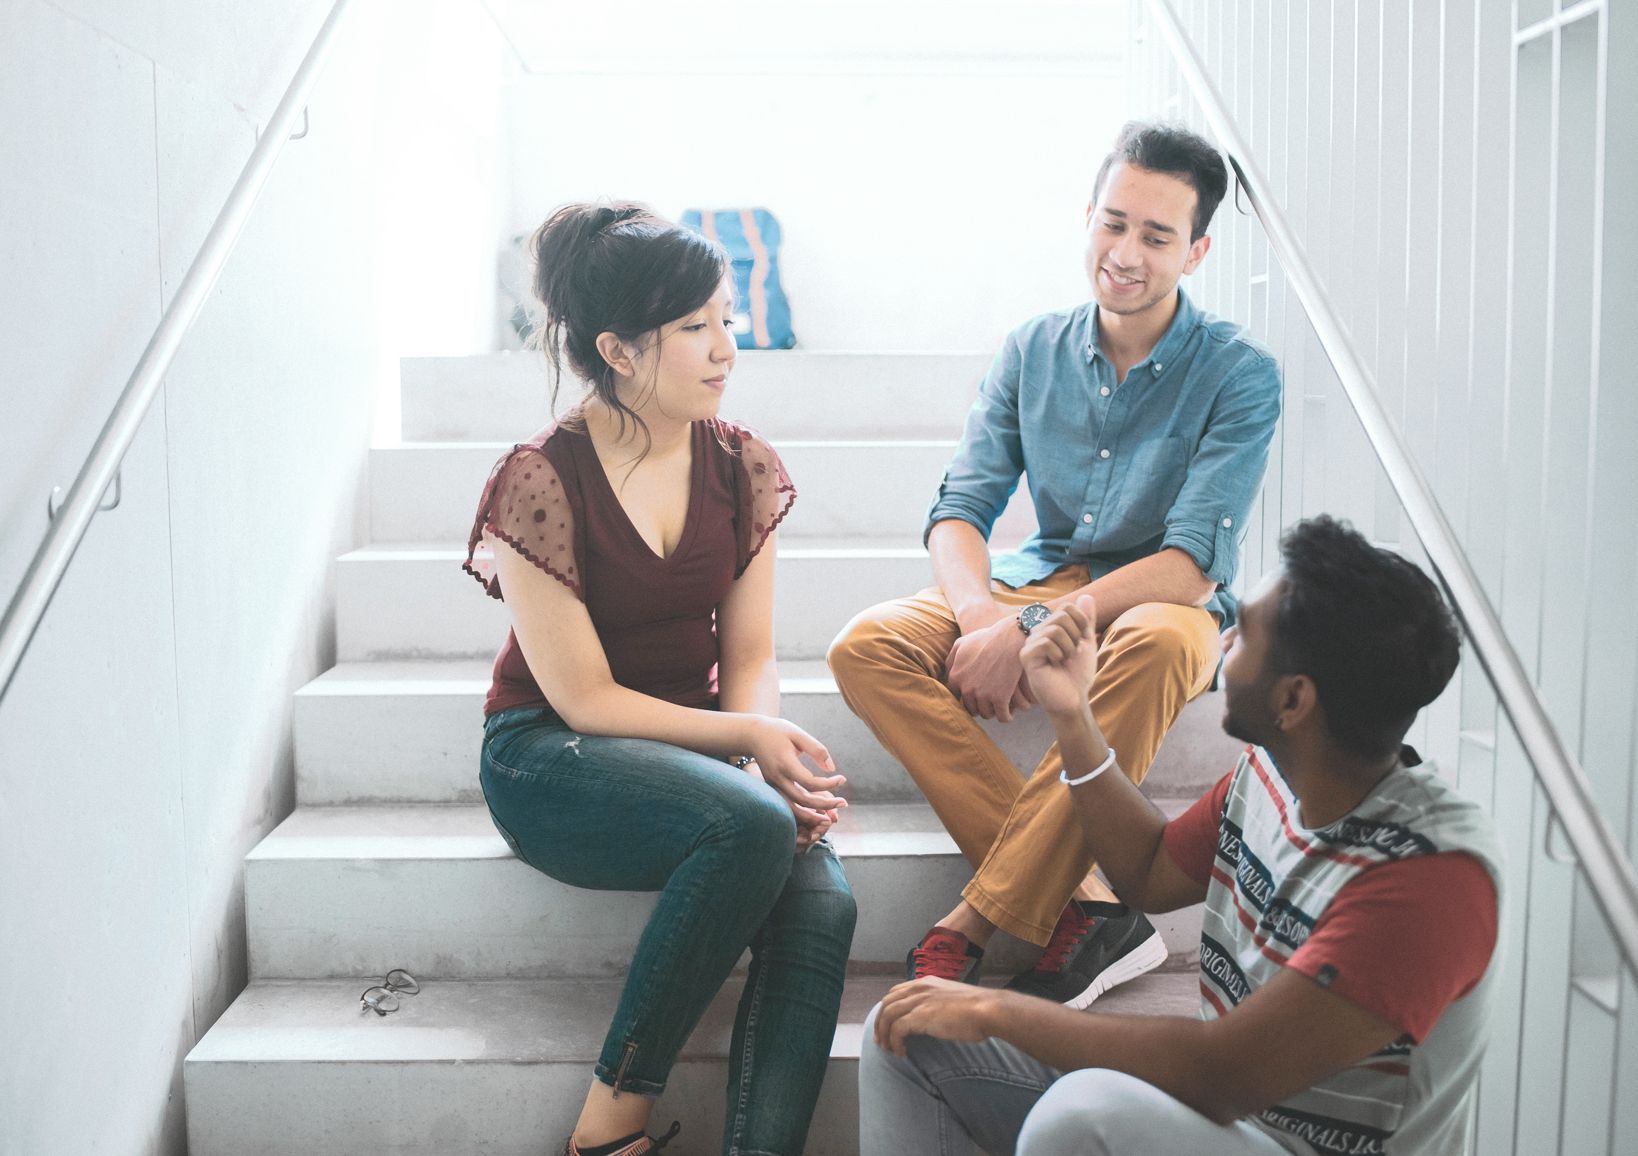 Drei Studierende sitzen auf Treppen der Hochschule und unterhalten sich